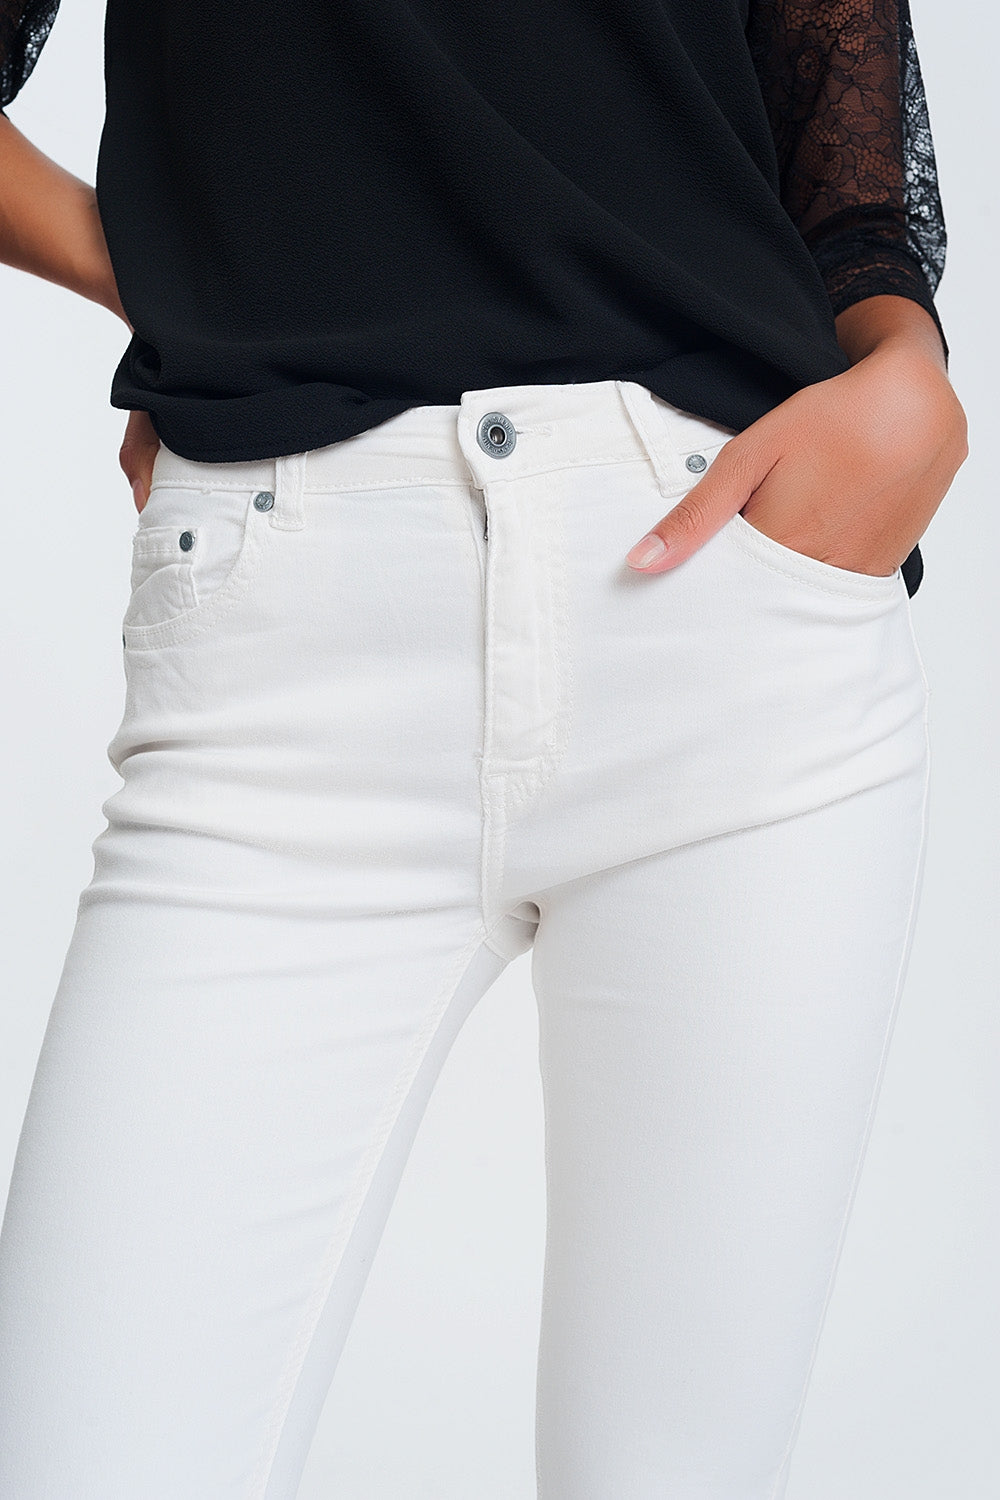 jeans straight crema con caviglie larghe